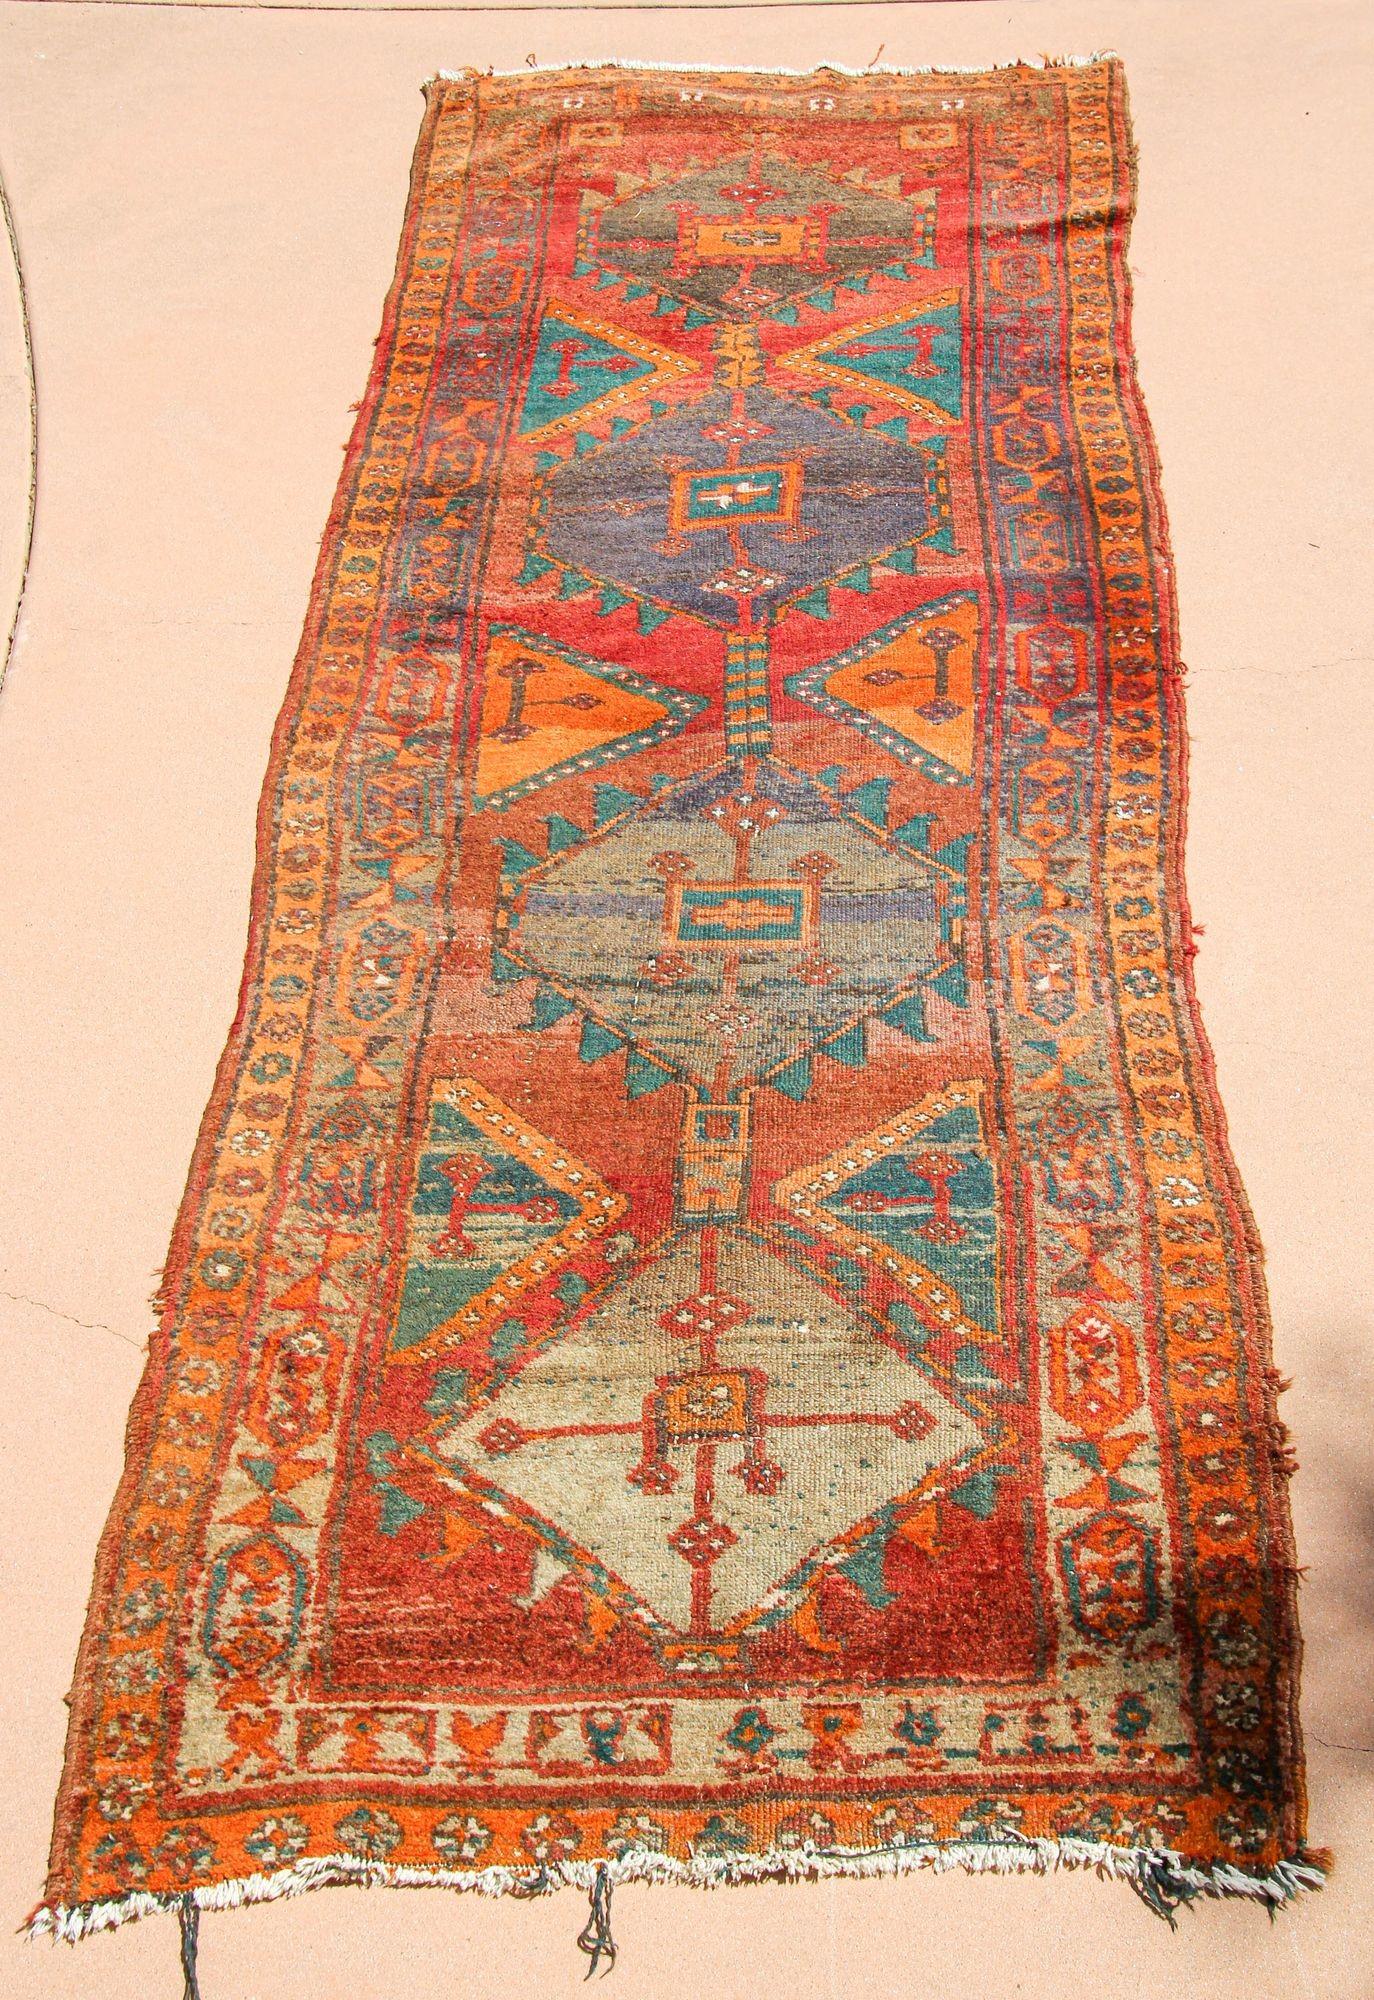 1950er handgeknüpfter Vintage-Teppich Läufer aus der Türkei.
Diese Teppiche haben eine reiche Geschichte, die Jahrhunderte zurückreicht, und sind eng mit der Kultur und dem Erbe des Landes verbunden.
Handgeknüpfter Läufer aus der Osttürkei,